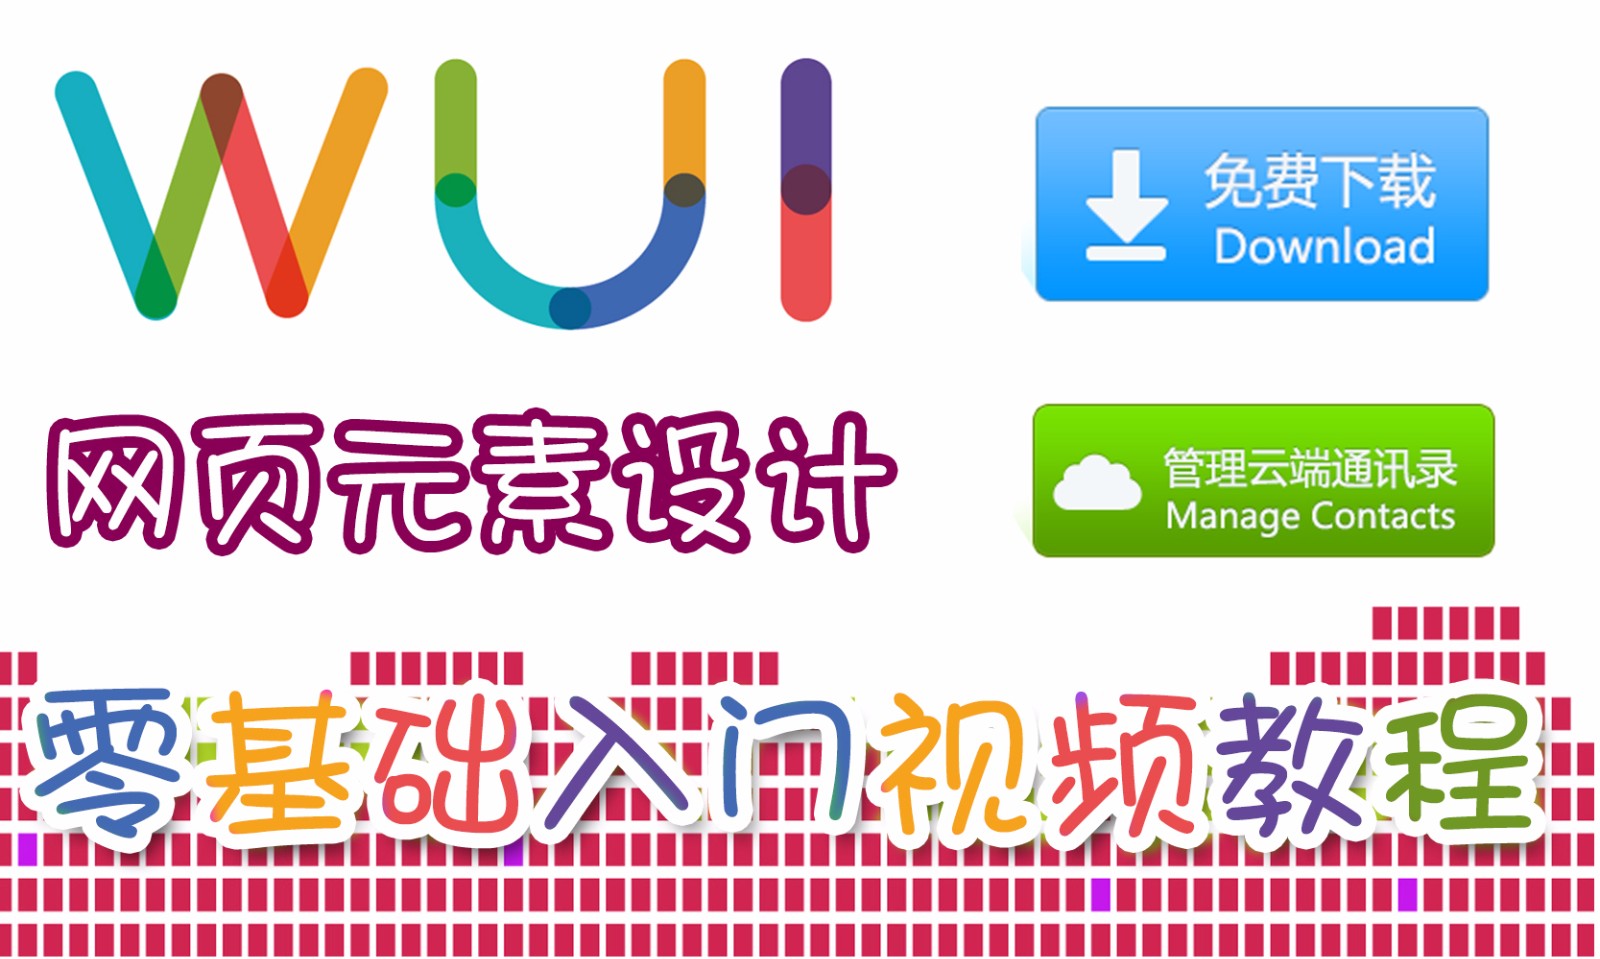 【吴刚大讲堂】网页元素设计WUI零基础入门视频教程